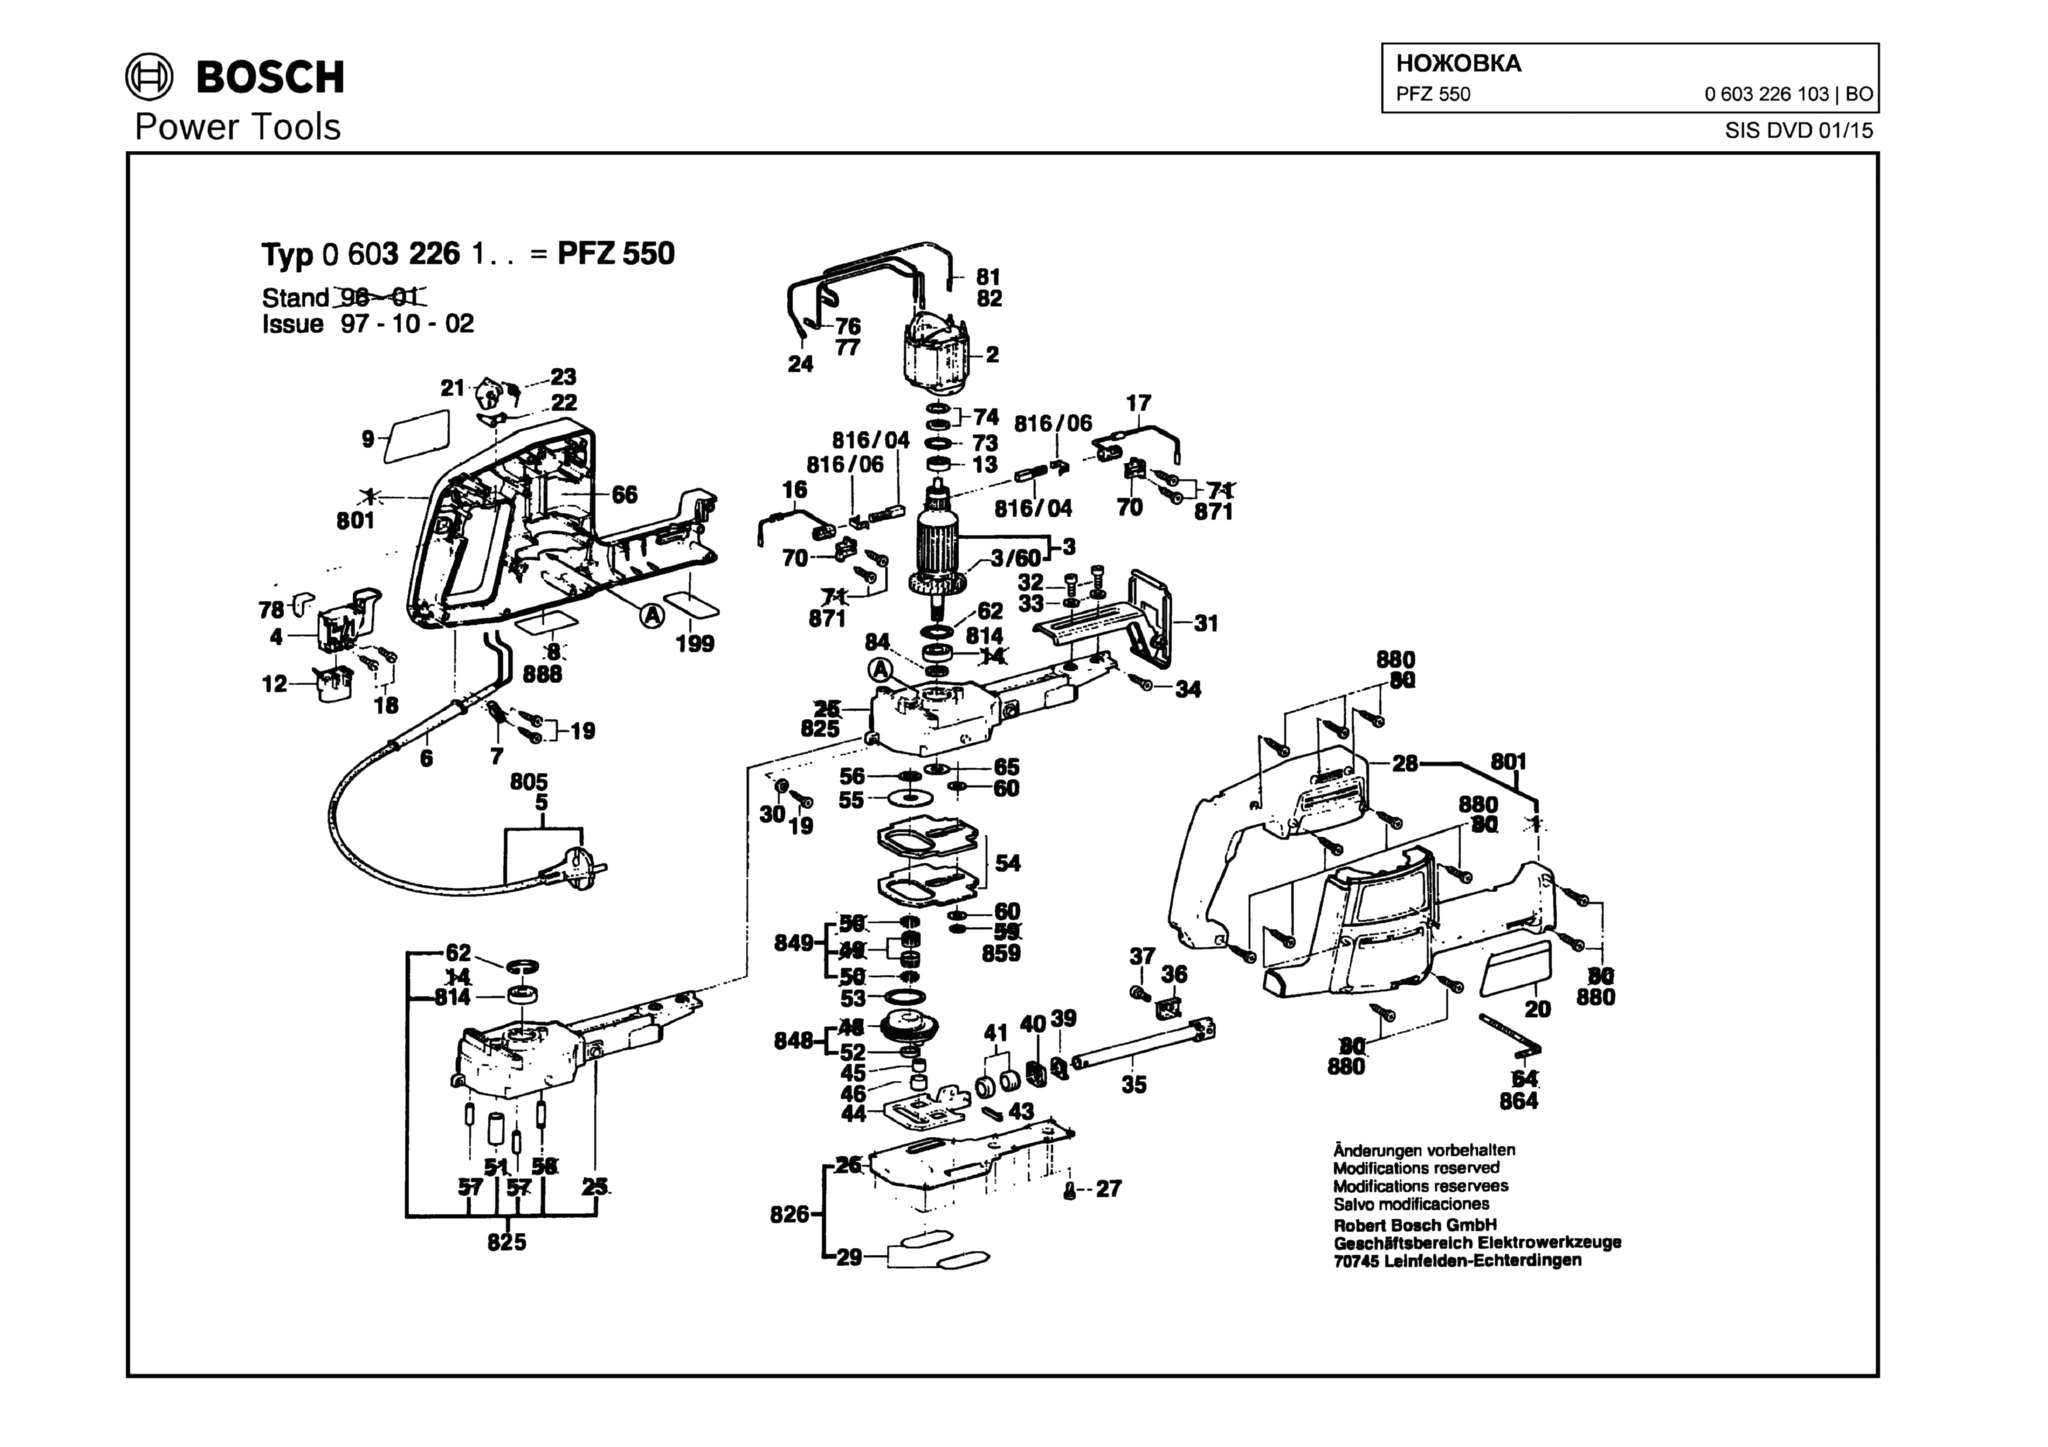 Запчасти, схема и деталировка Bosch PFZ 550 (ТИП 0603226103)